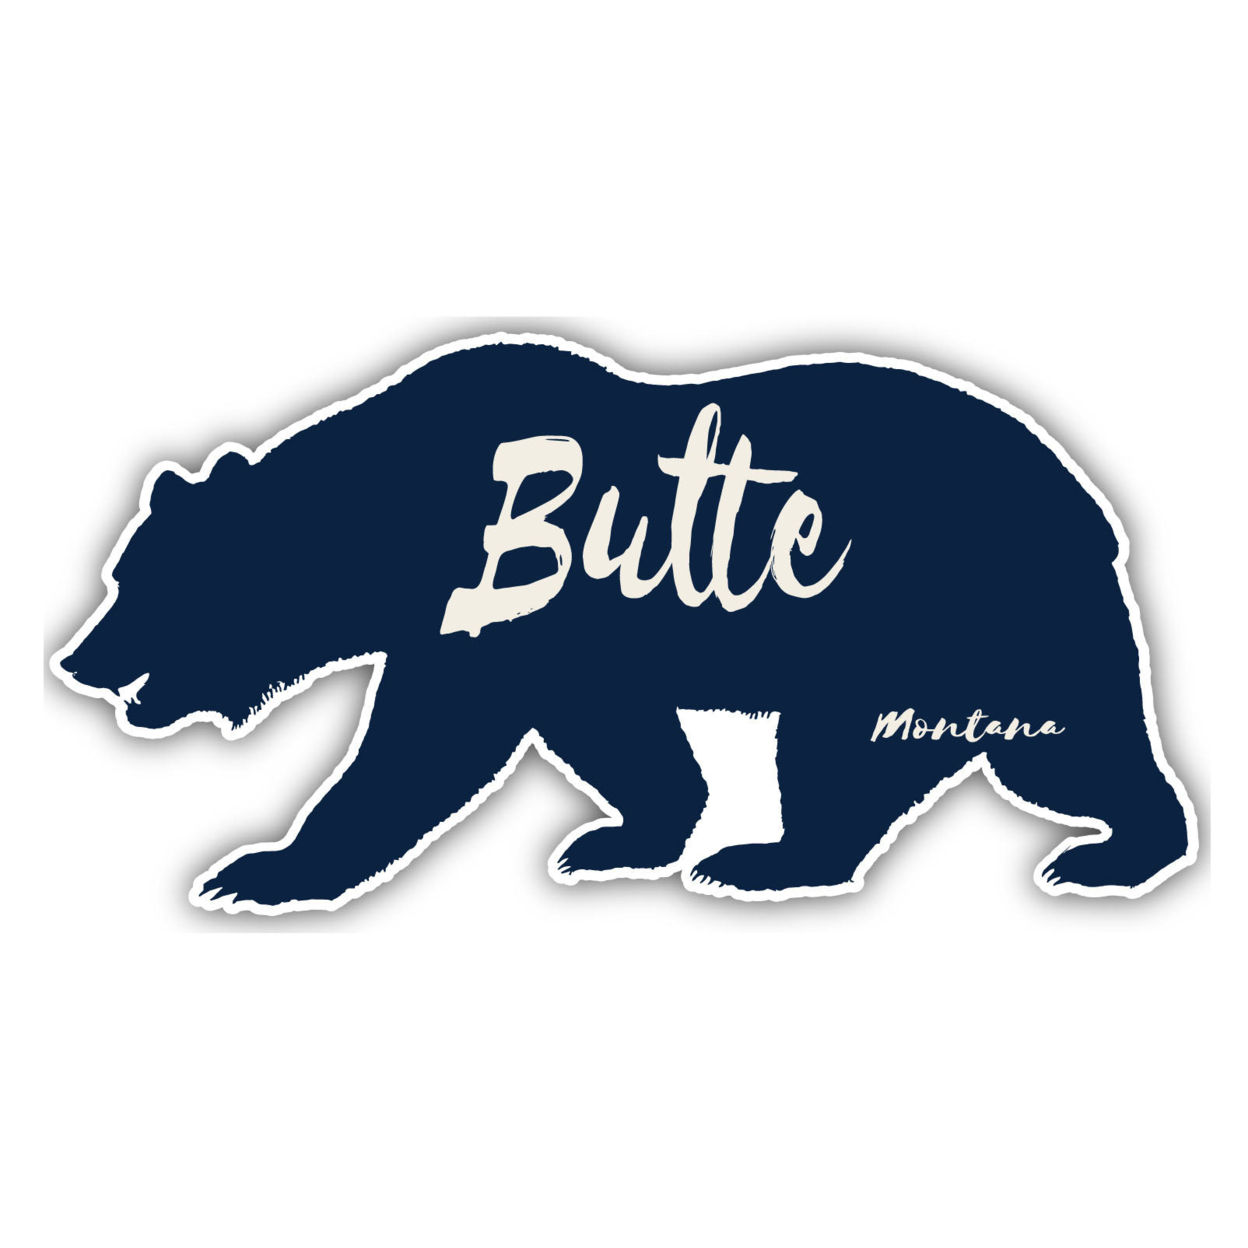 Butte Montana Souvenir Decorative Stickers (Choose Theme And Size) - Single Unit, 12-Inch, Tent